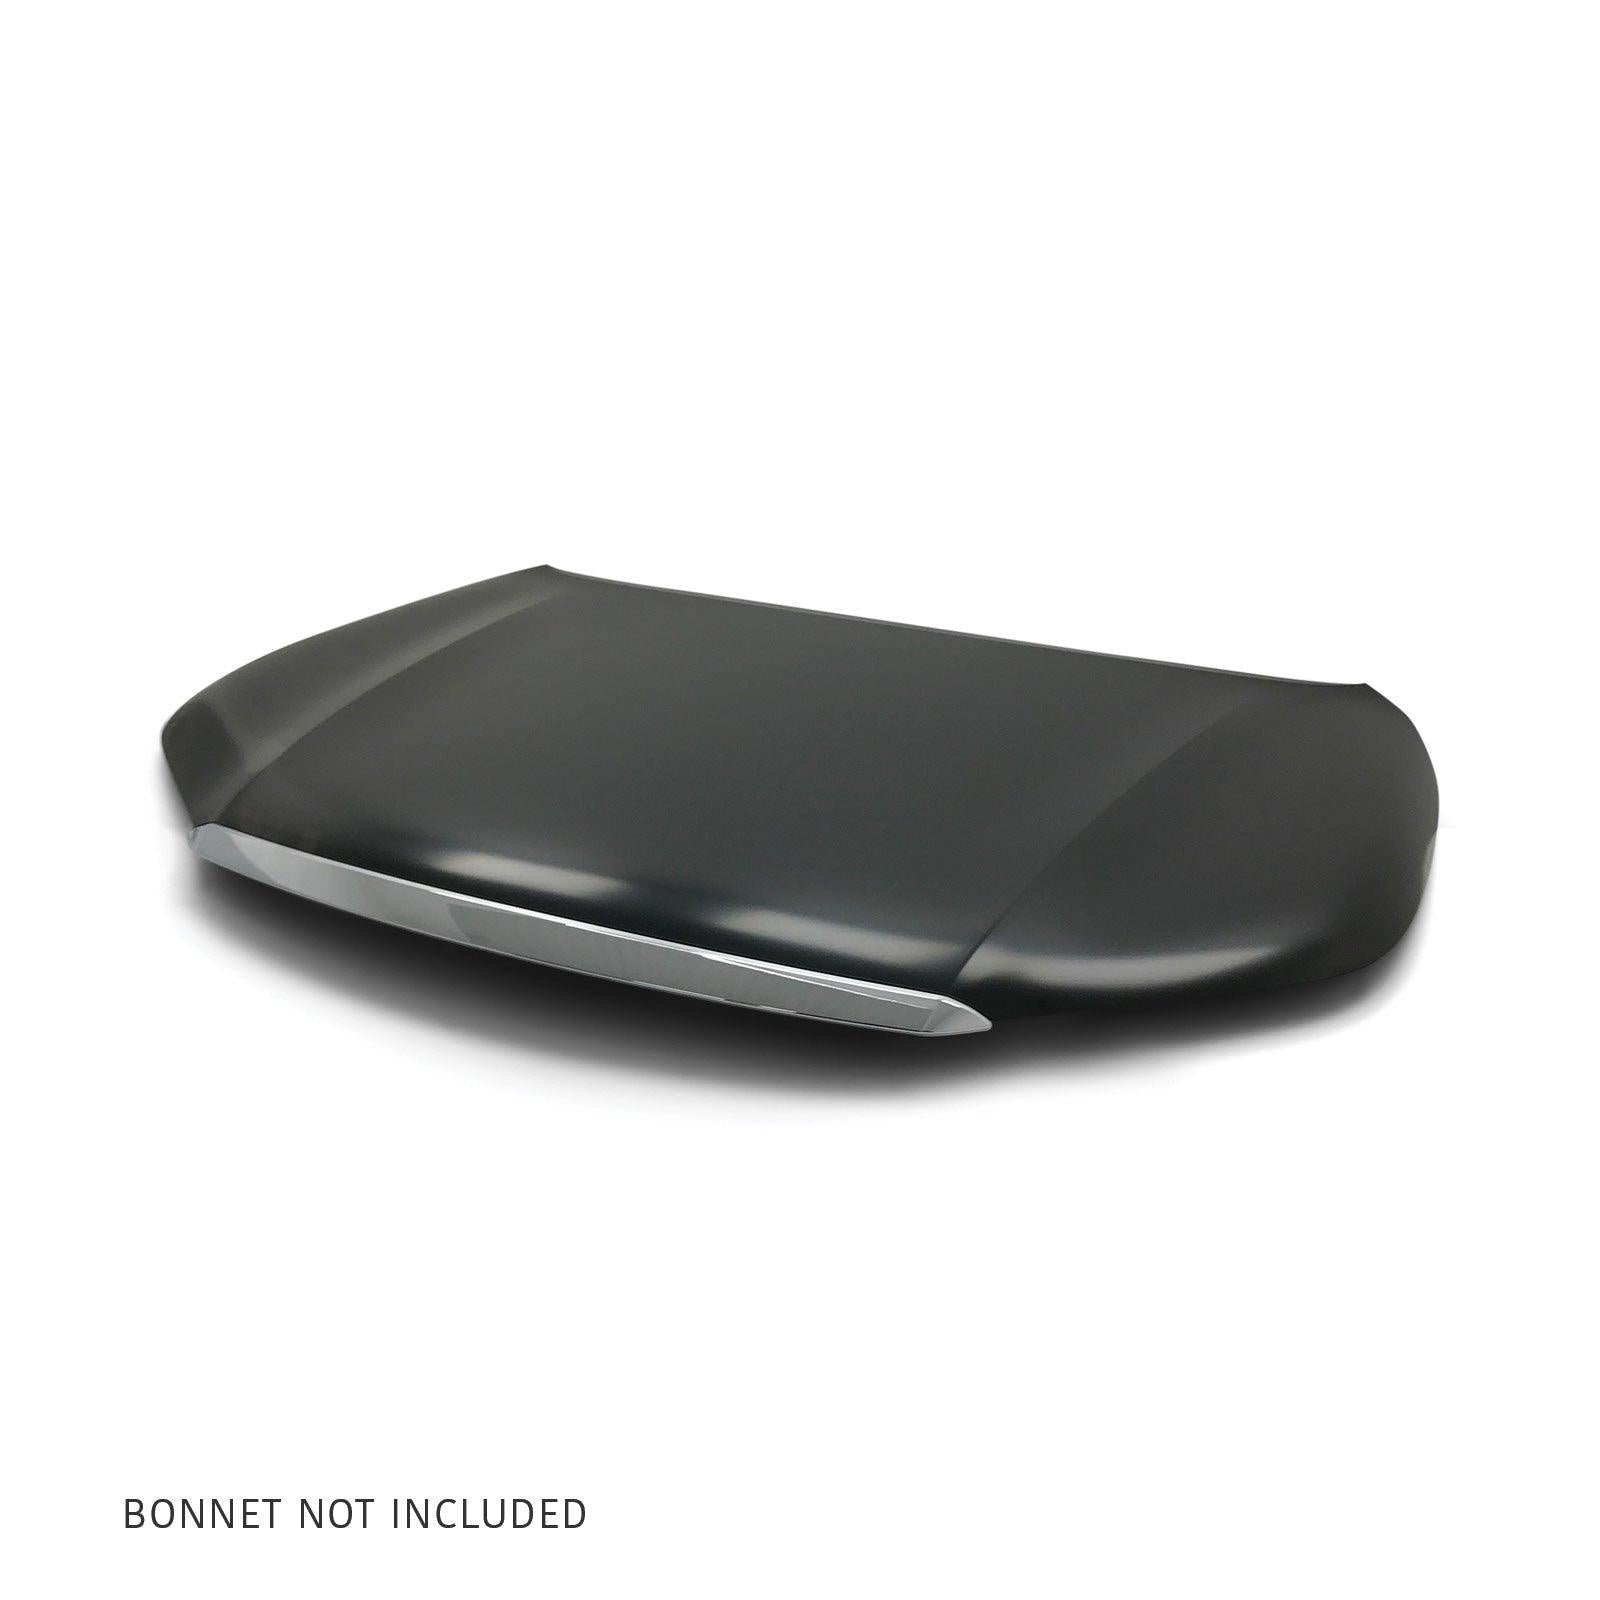 Bonnet Hood Trim Mould Chrome Fits Toyota Hilux N80 2015-2020 - 4X4OC™